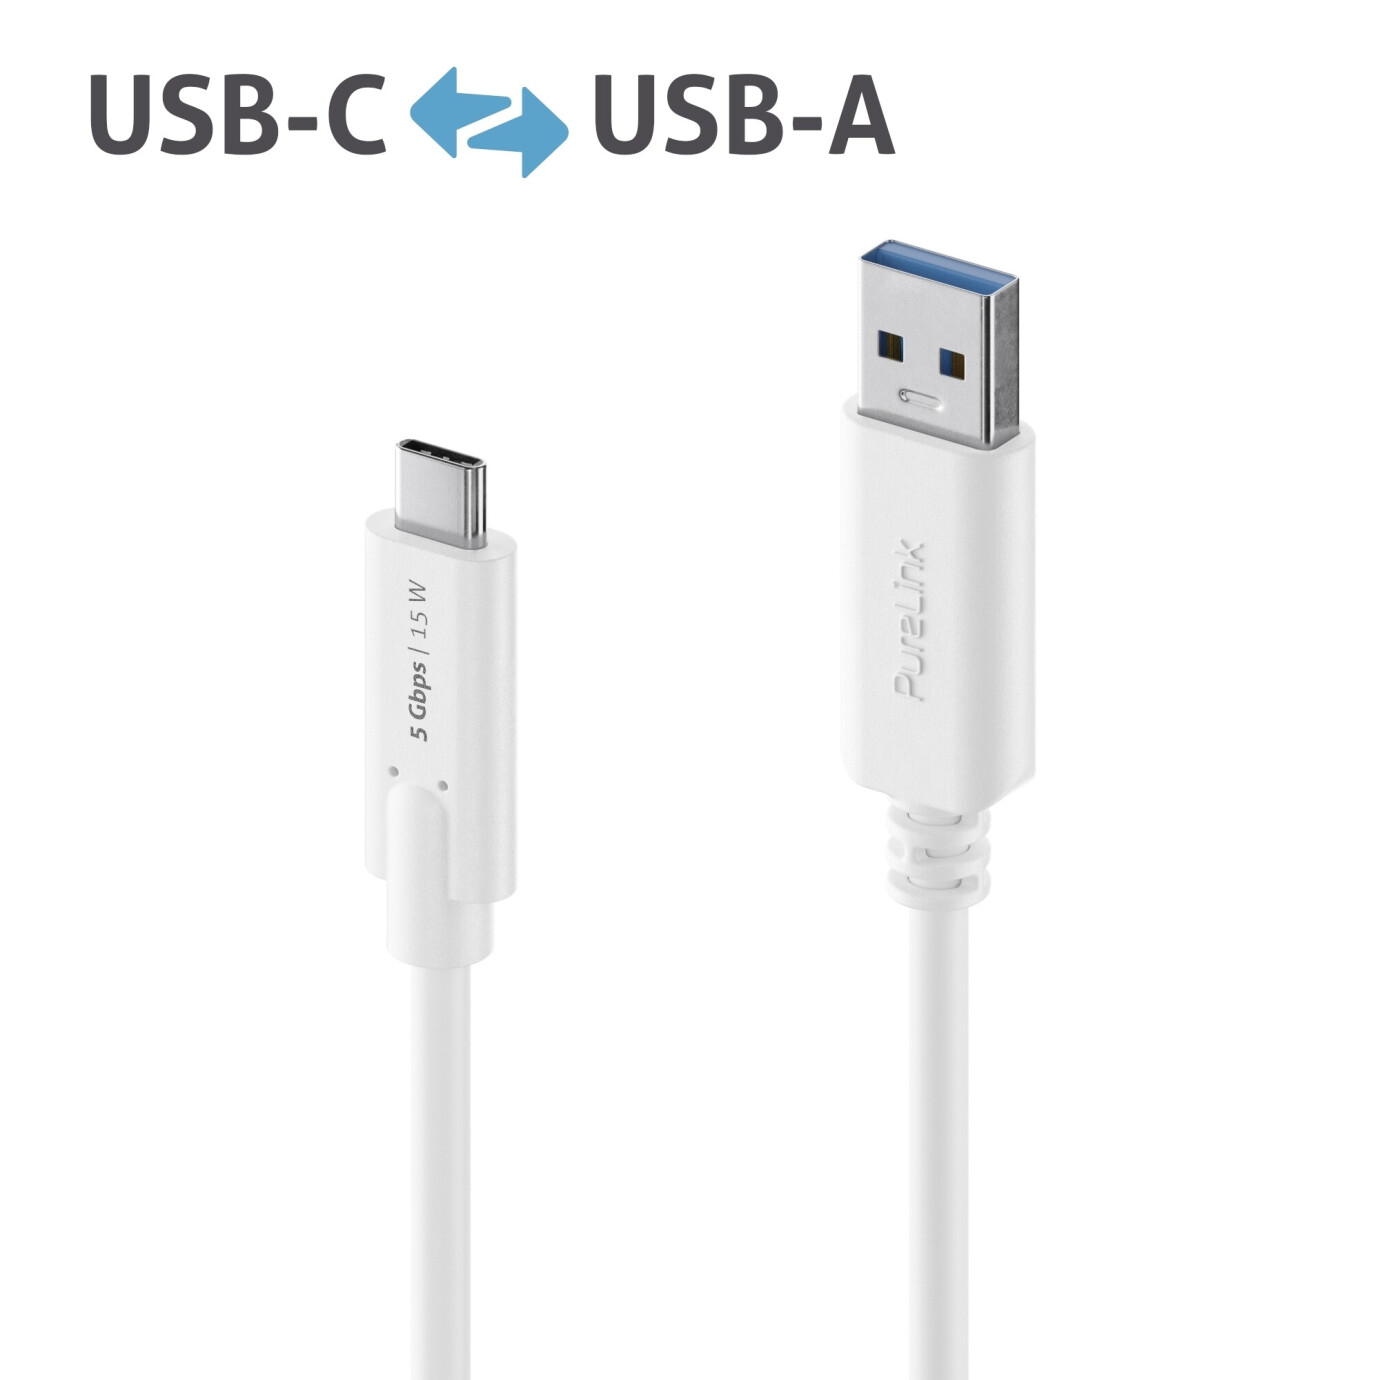 Purelink IS2600-020 USB-C auf USB-A Kabel 2m weiß